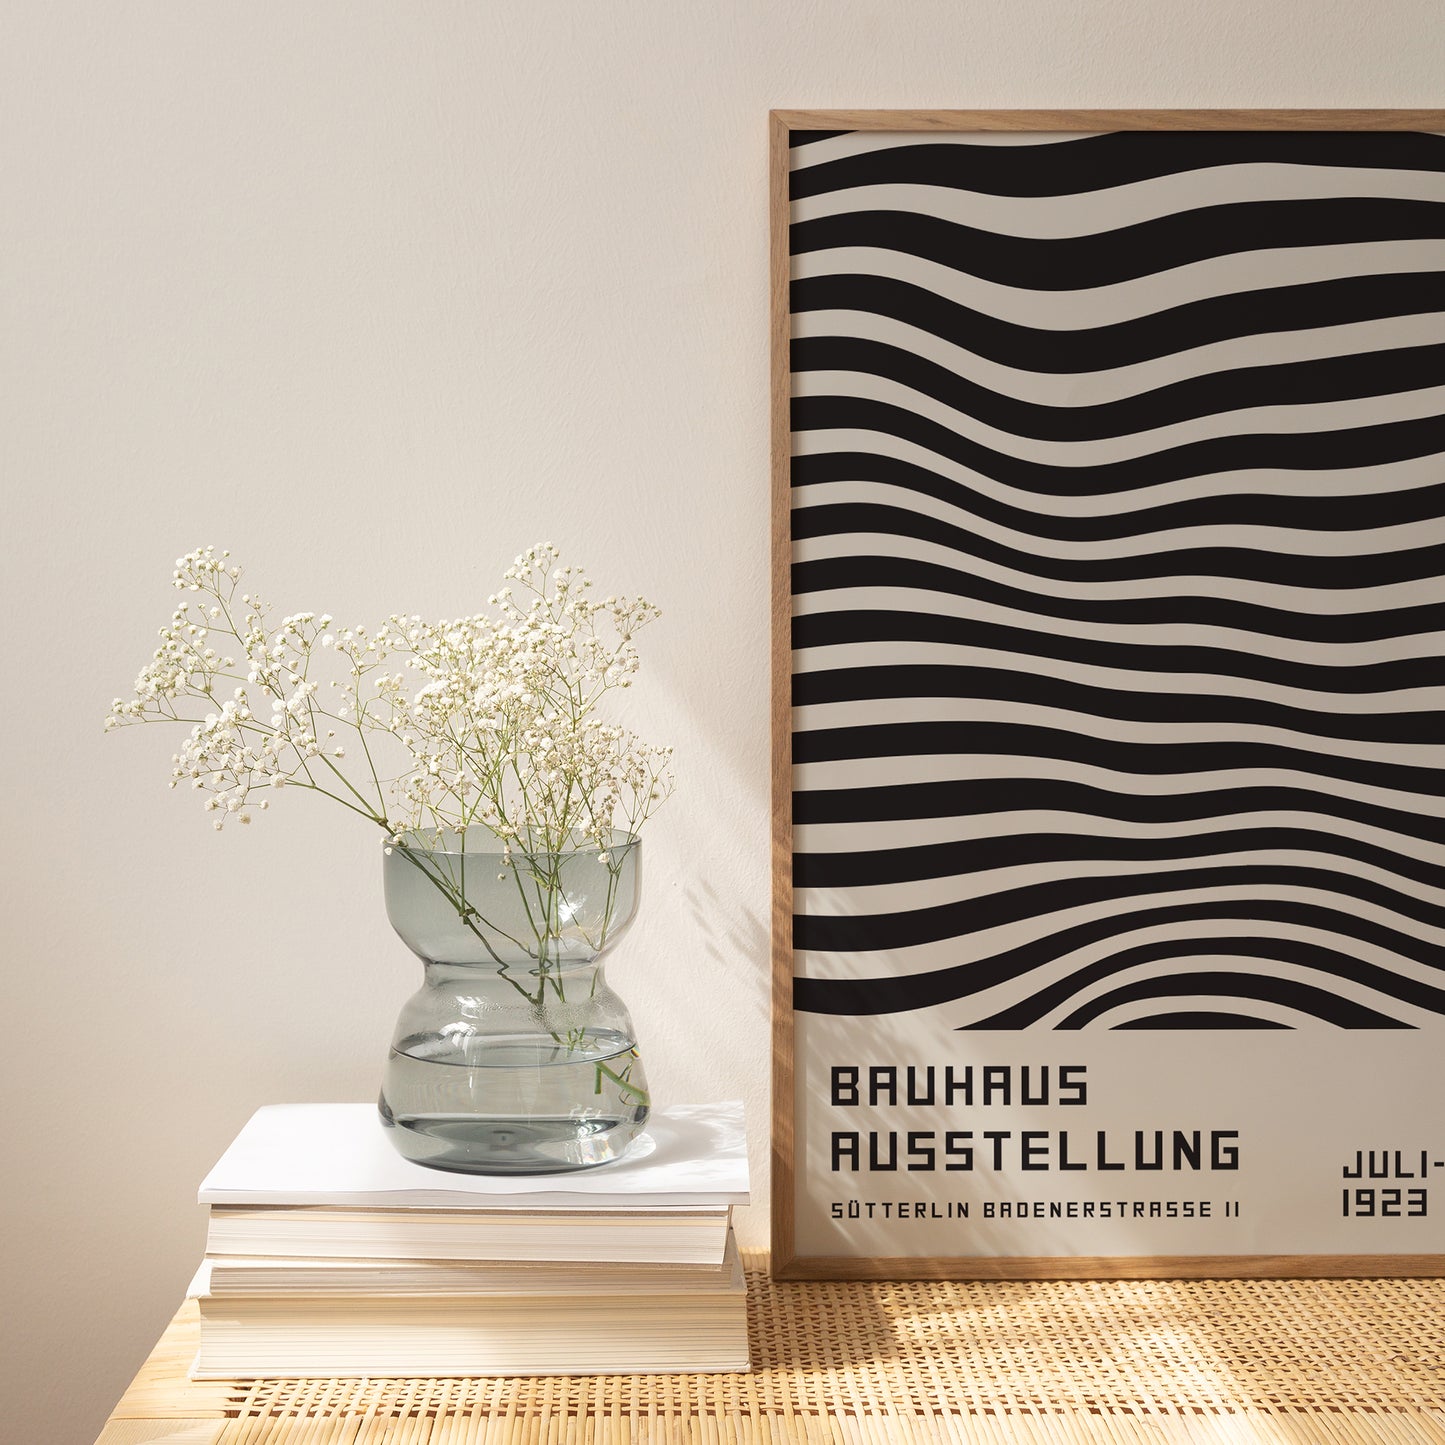 Bauhaus Black and White Poster